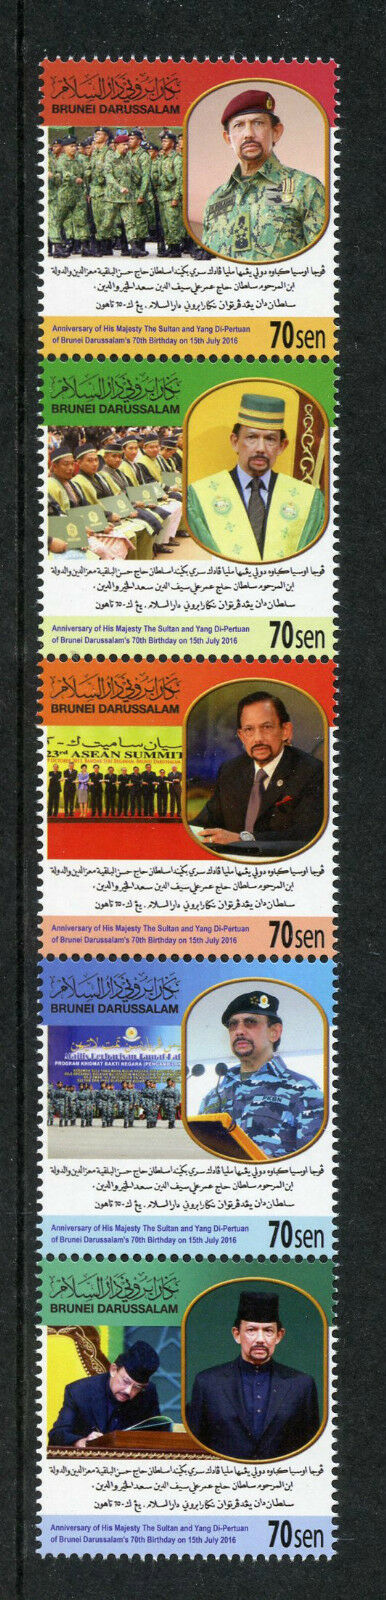 Brunei Royalty Stamps 2016 MNH Sultan Yang Di-Pertuan Brunei Darussalam 5v Strip